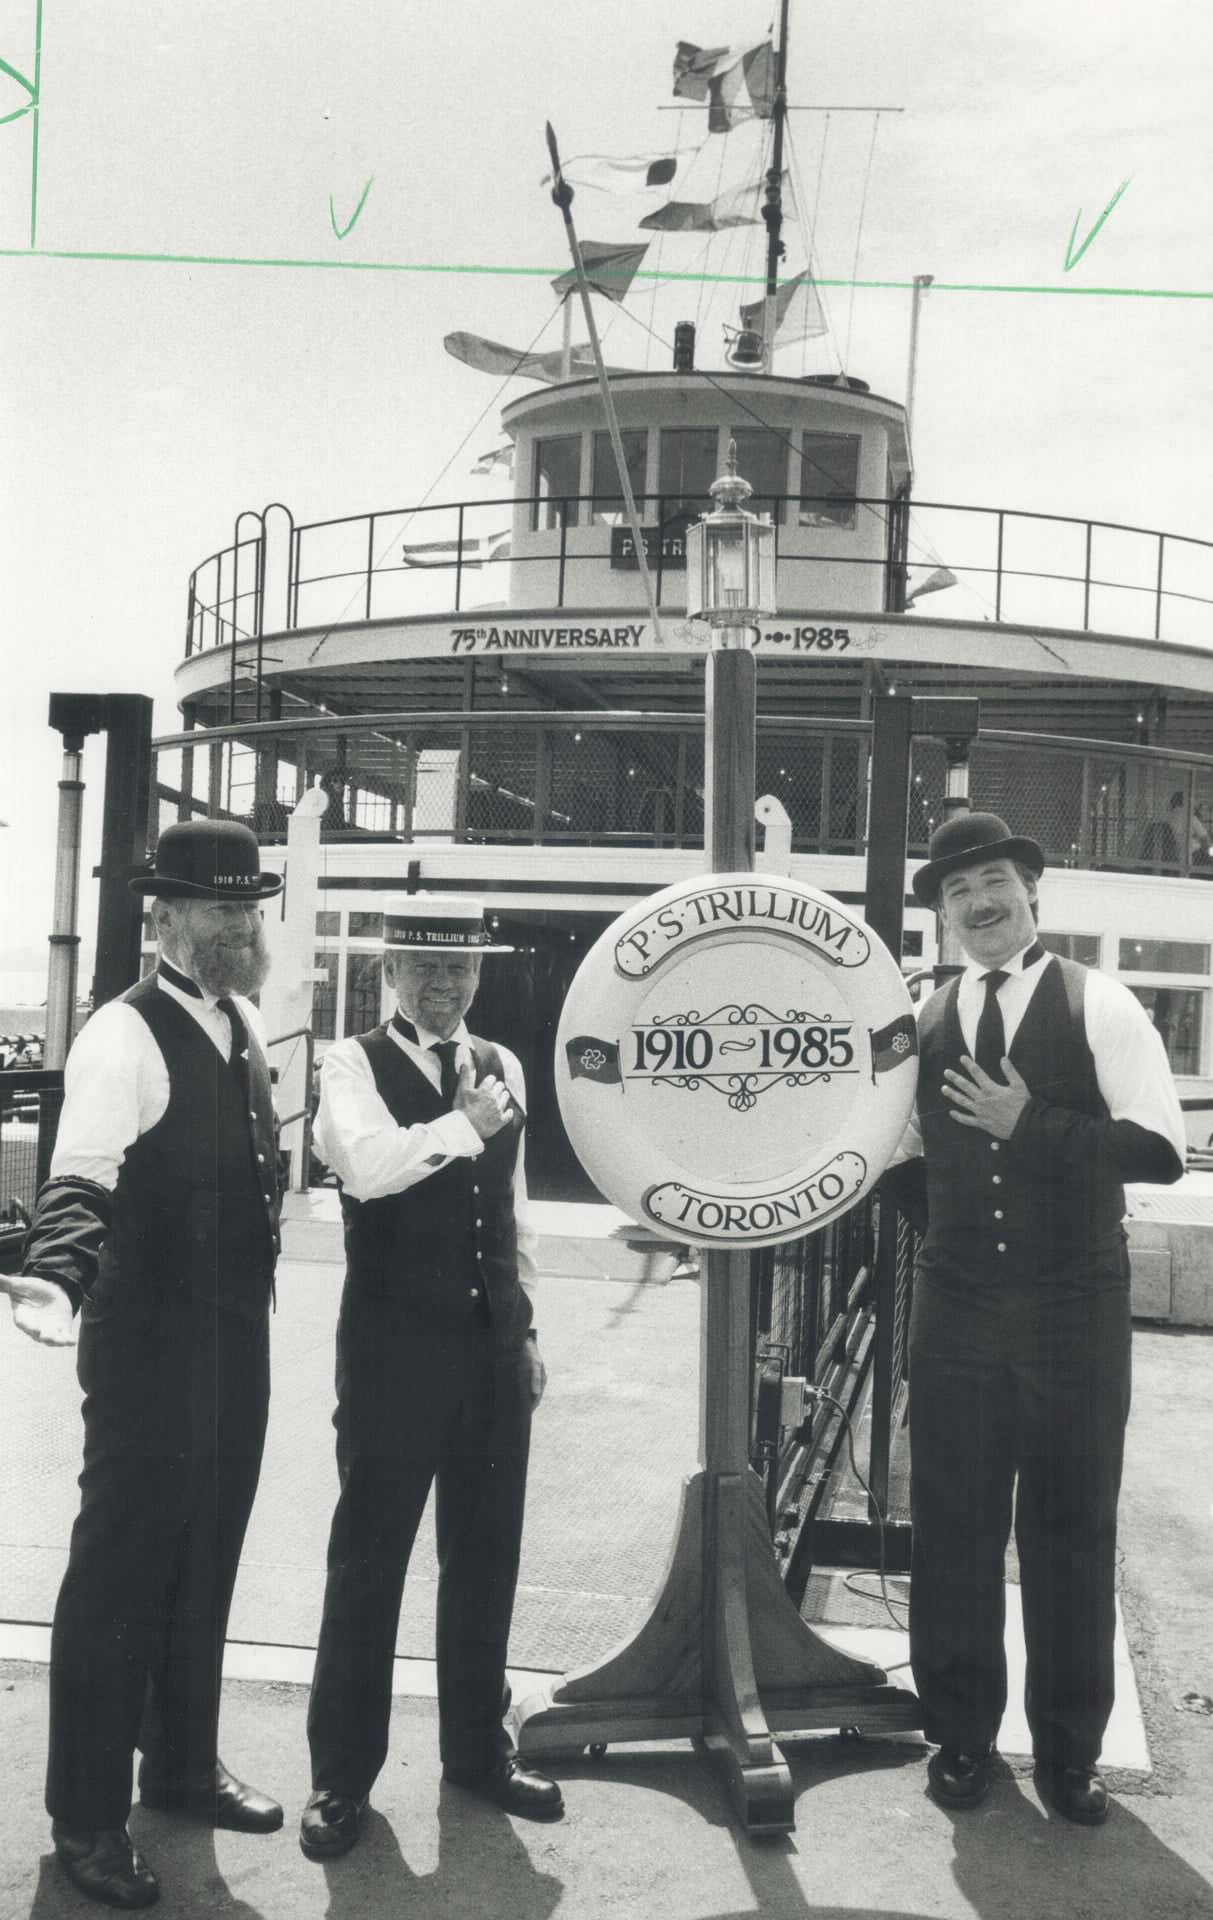 Trillium ferry boat, 1985